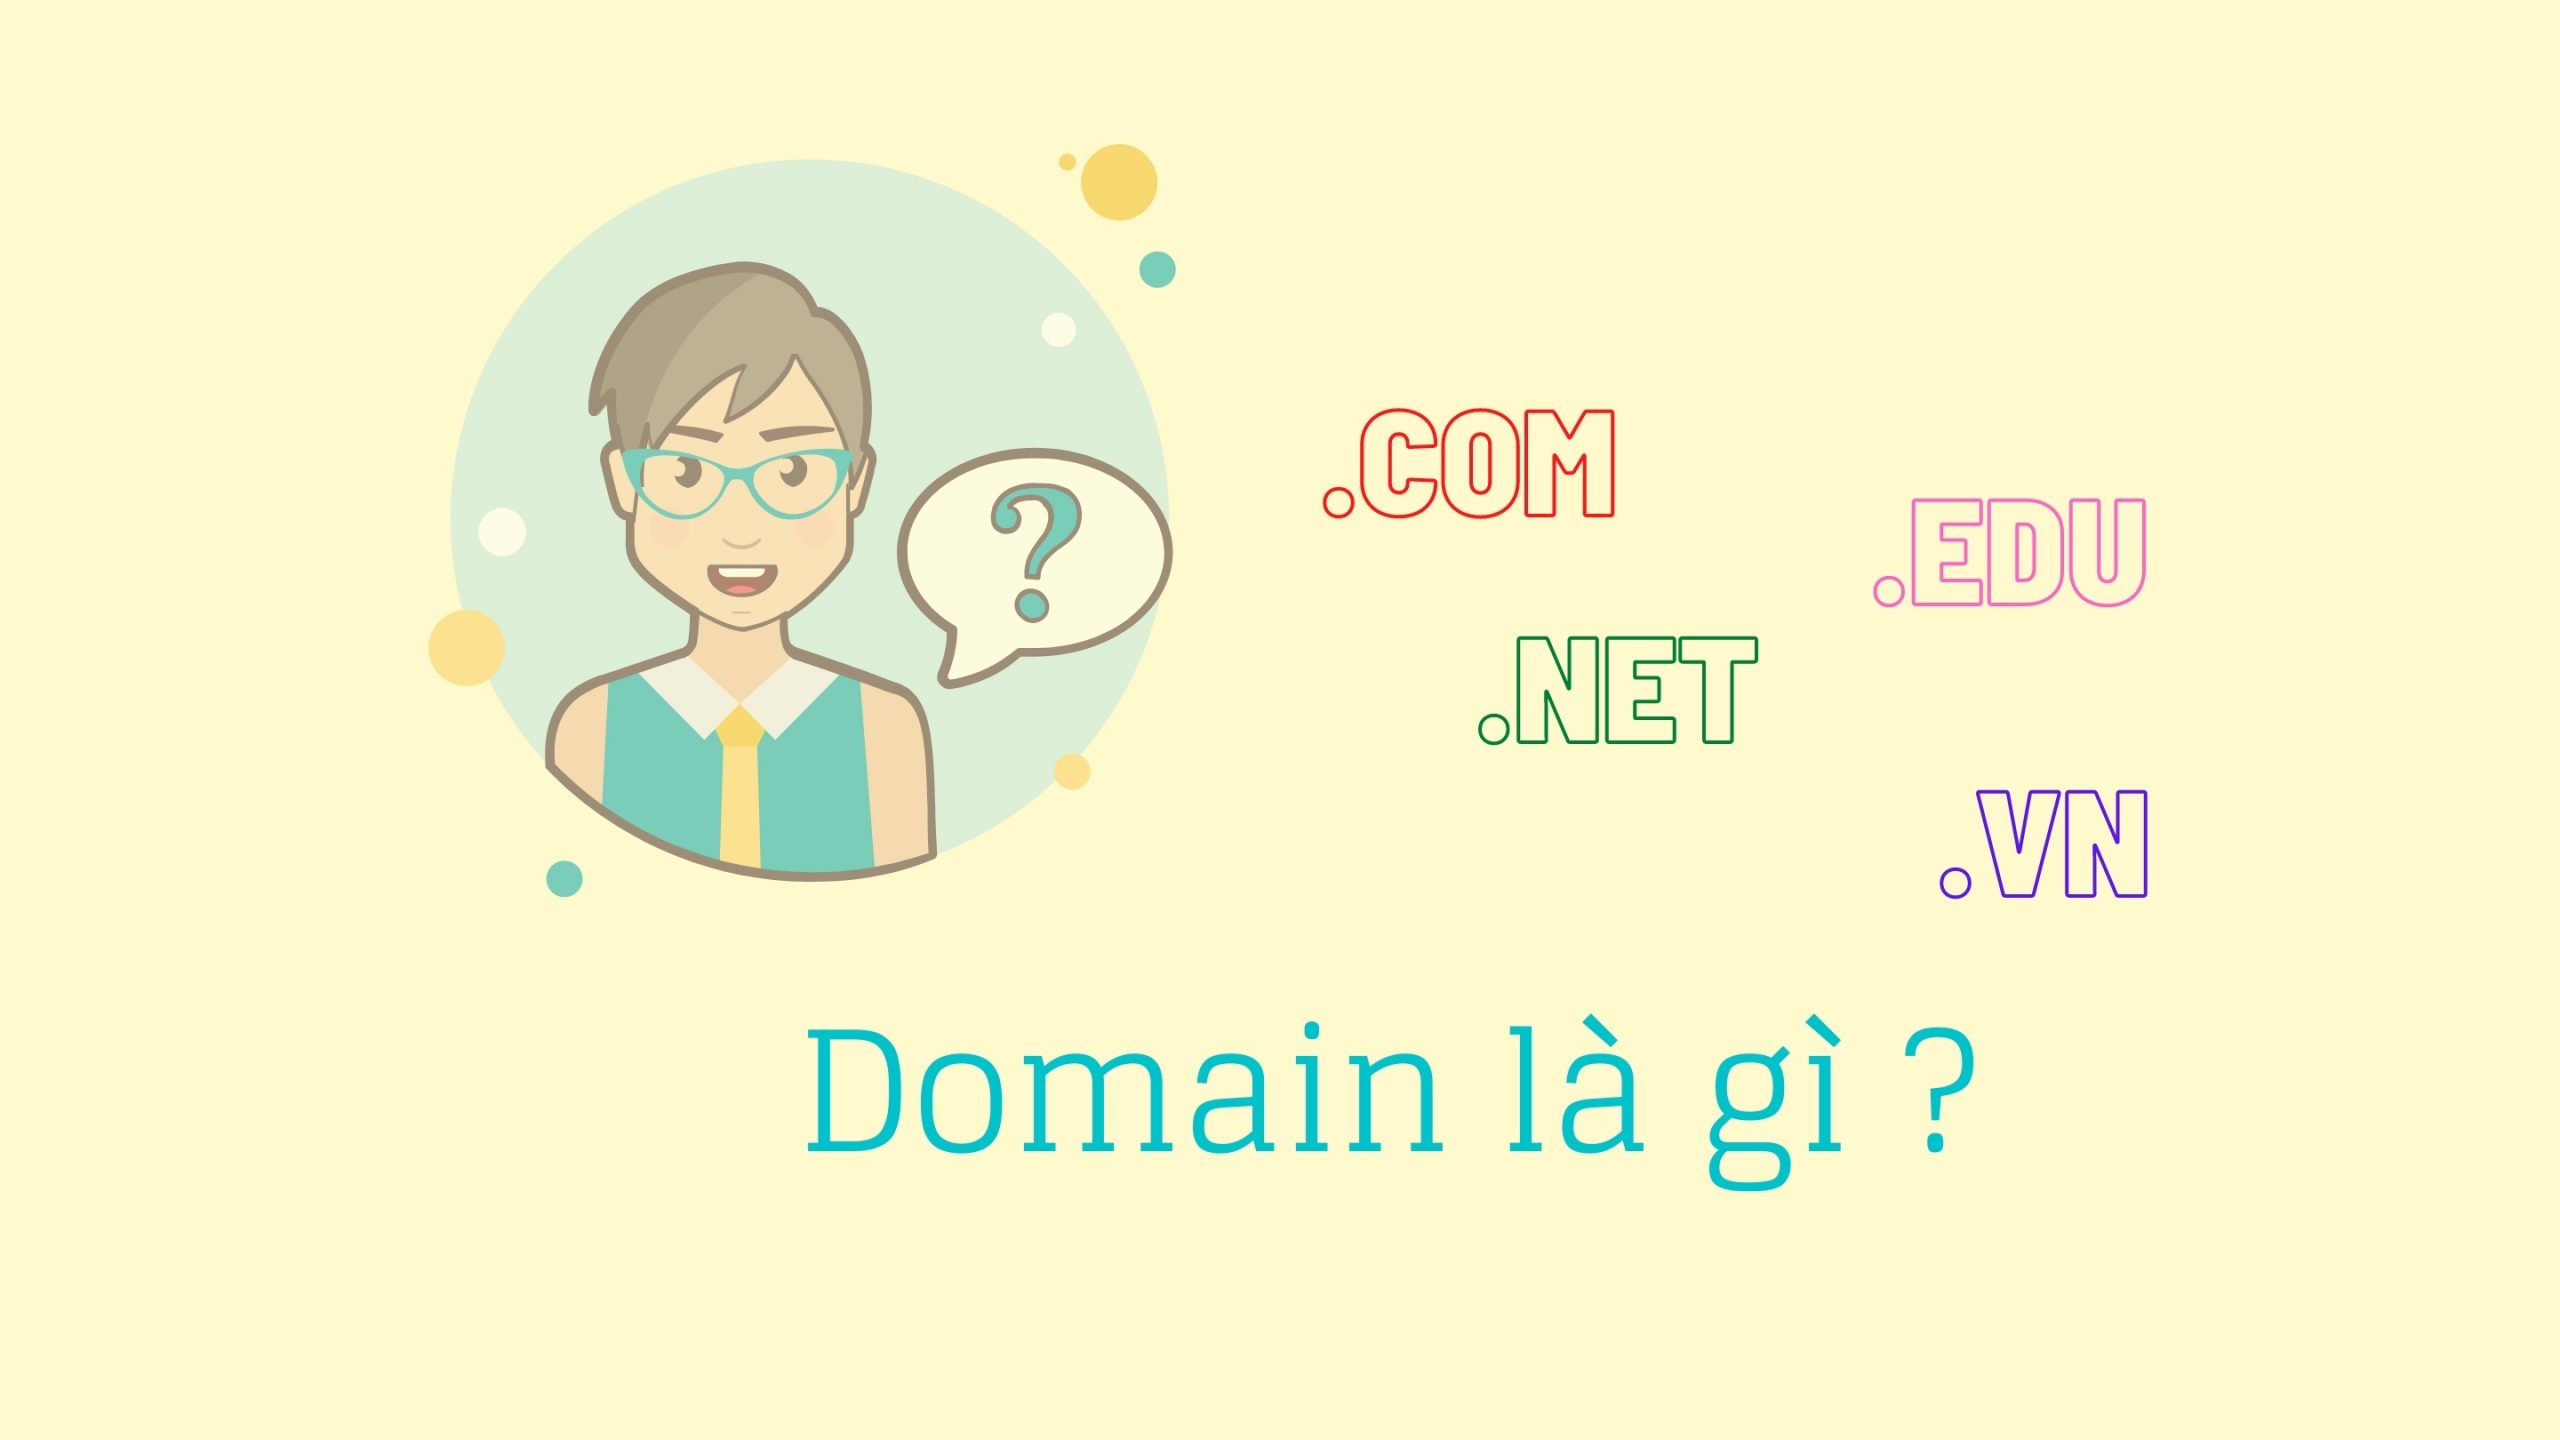 Tên miền (domain) là gì?